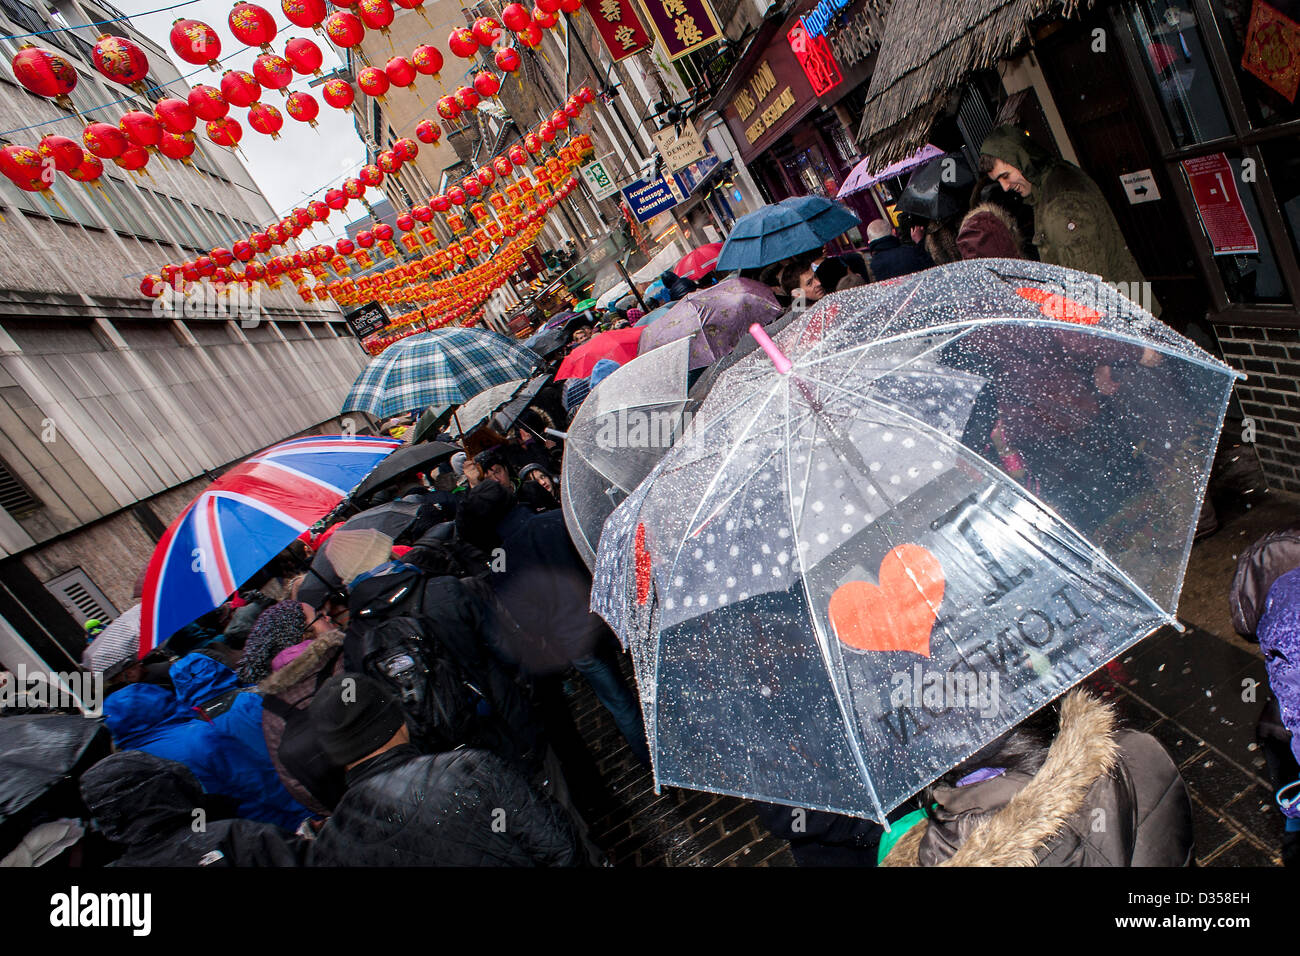 London, UK. 10. Februar 2013. Chinesisches Neujahrsfeiern sehen große Menschenmengen trotz Regen und Kälte. Es ist das Jahr der Schlange, aber wie üblich sind die zeremoniellen tanzenden Löwen Glücksbringer, die Ladenbesitzer. Chinatown, London. Stockfoto